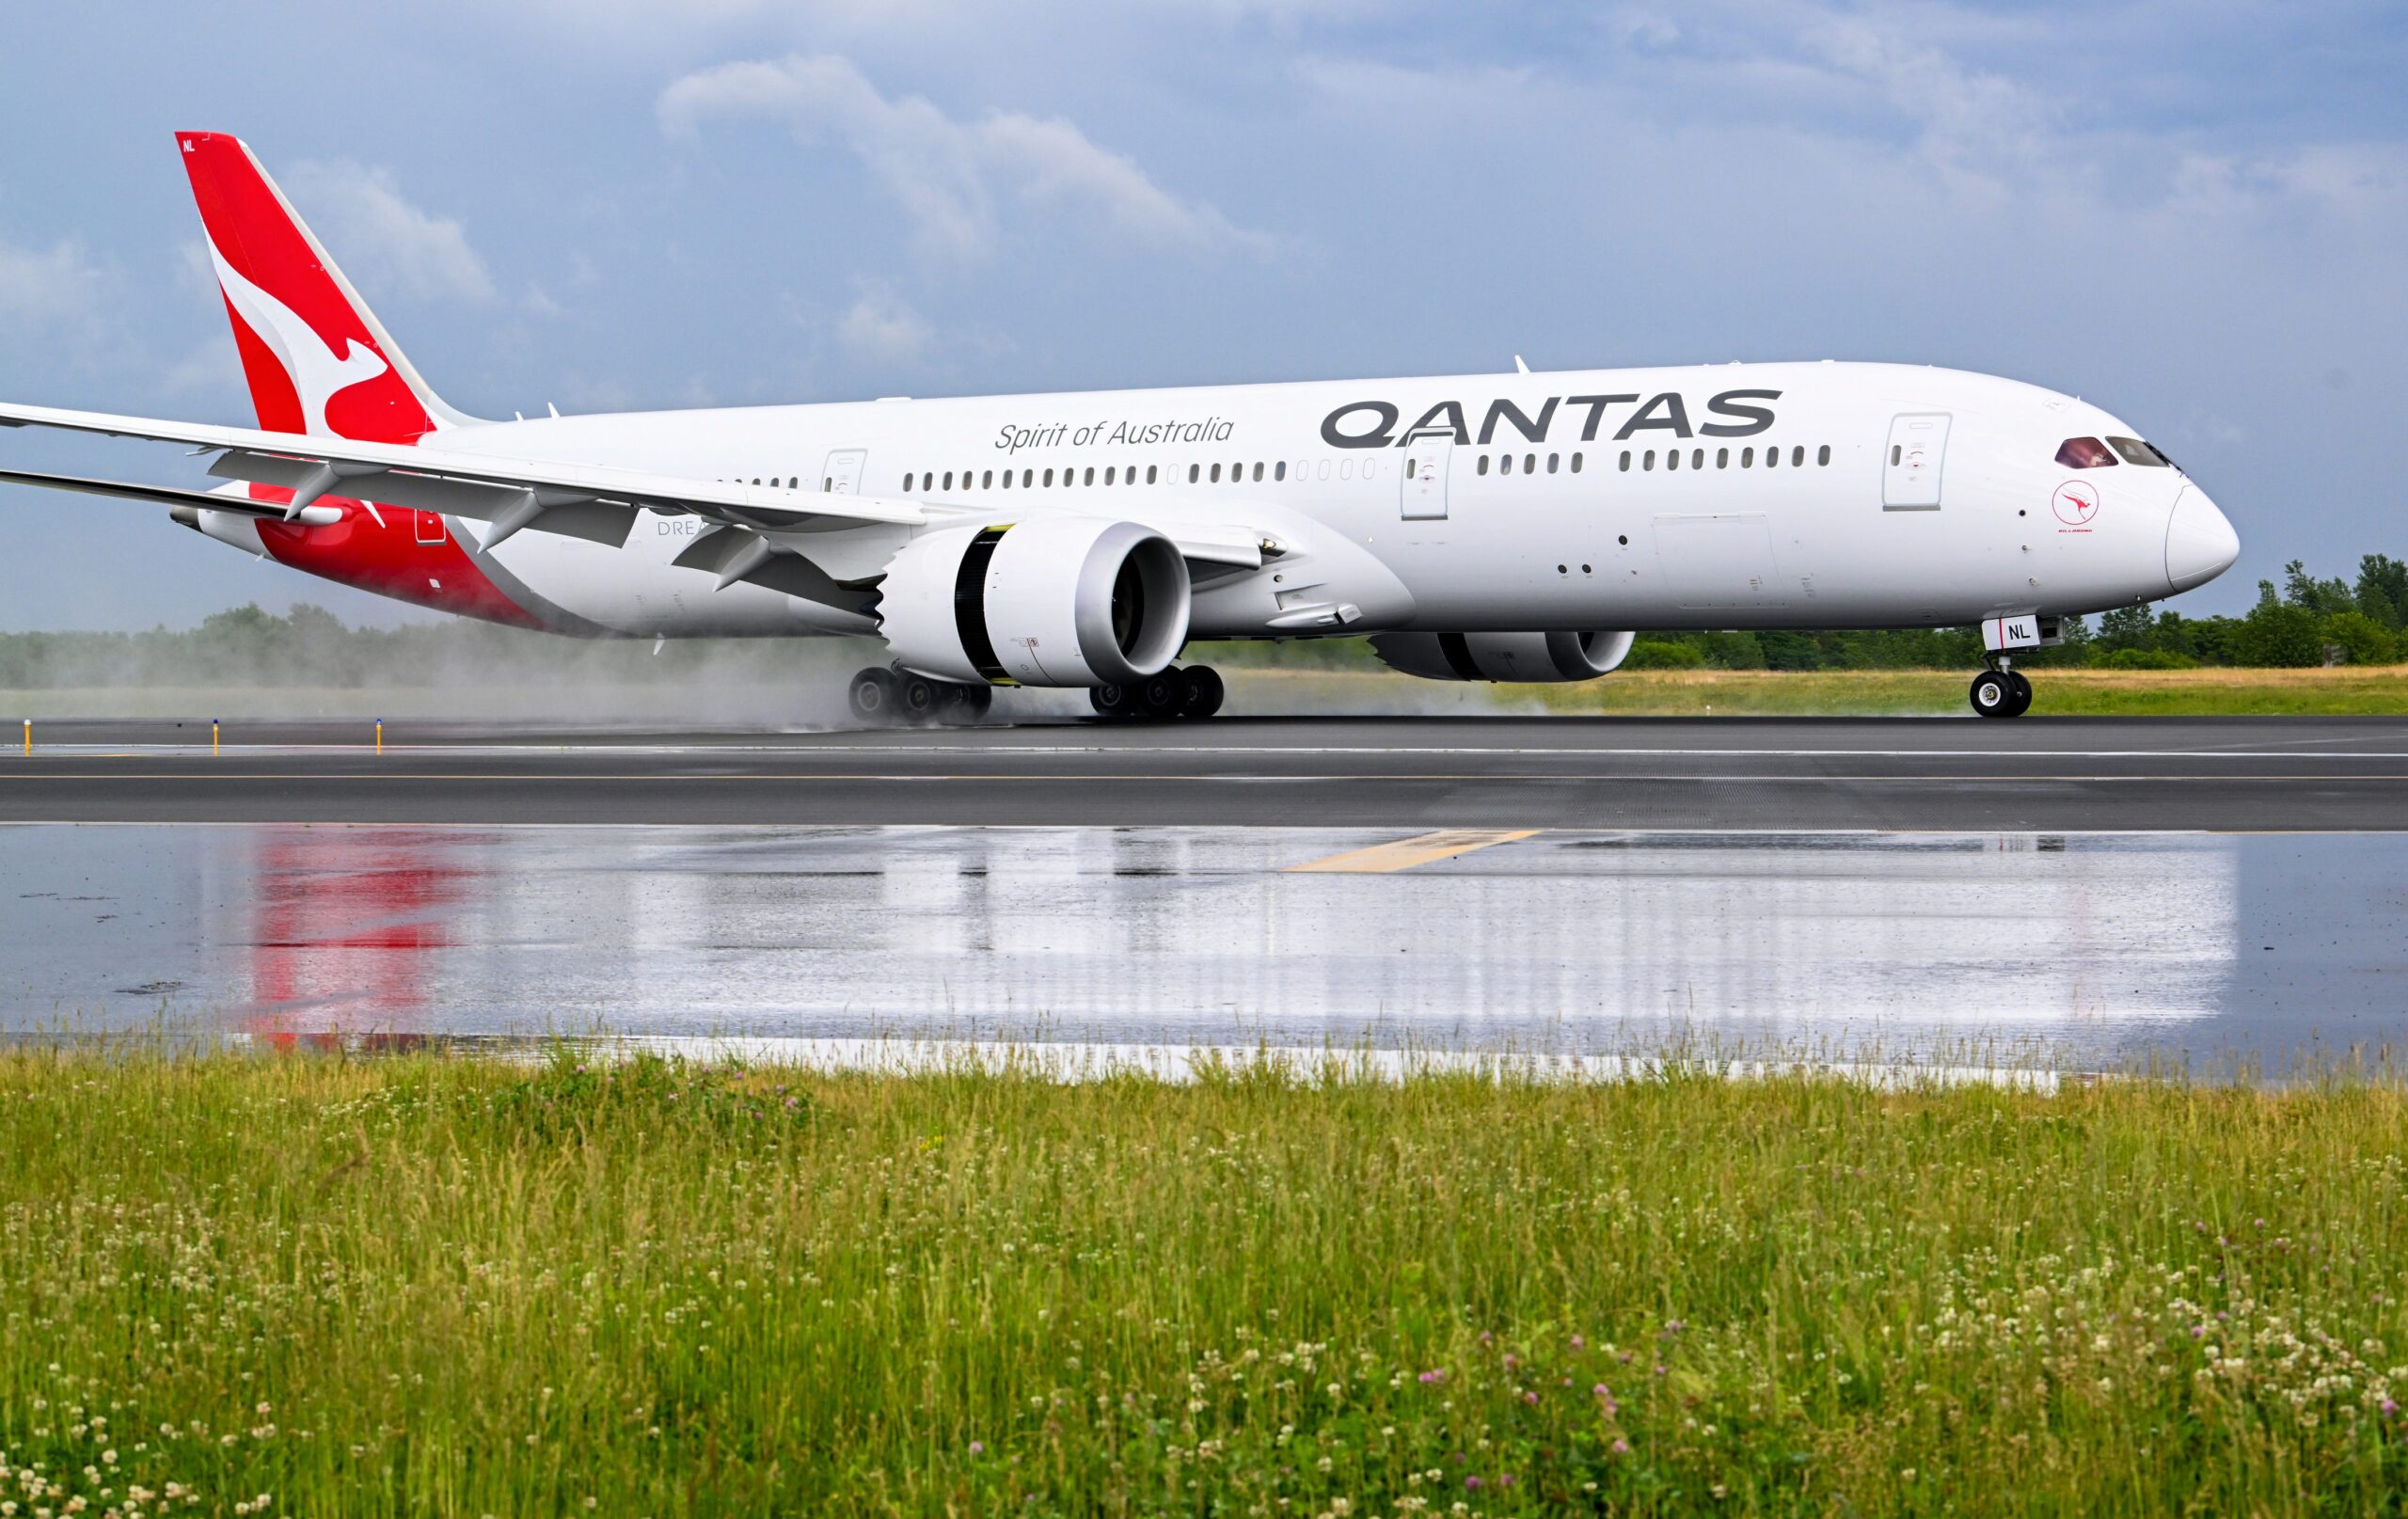 De Australische luchtvaartmaatschappij Qantas moest zijn eerste plaats in de veiligheidsranking van AirlineRankings.com dit jaar afstaan aan Air New Zealand. 